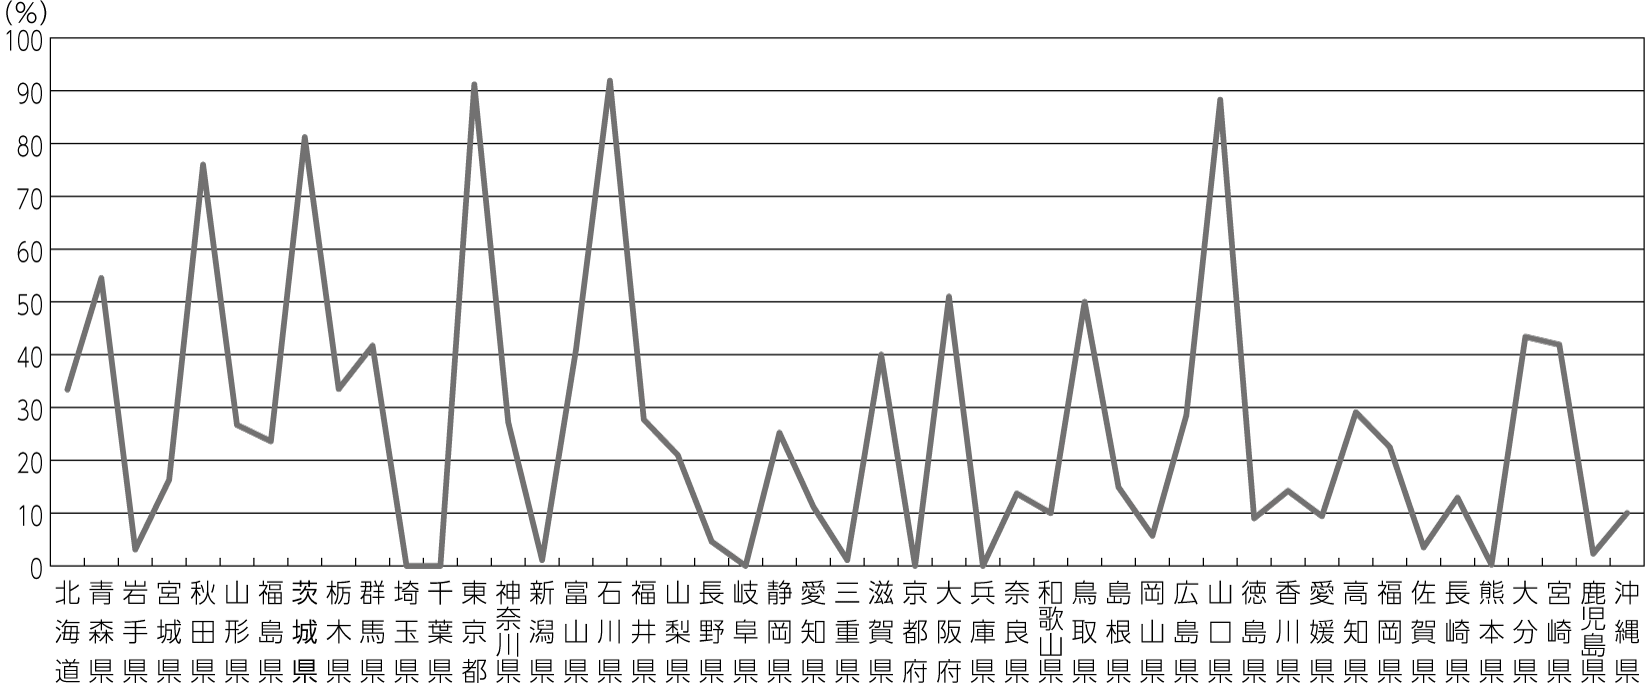 図2　都道府県別財政調整基金残高減少率